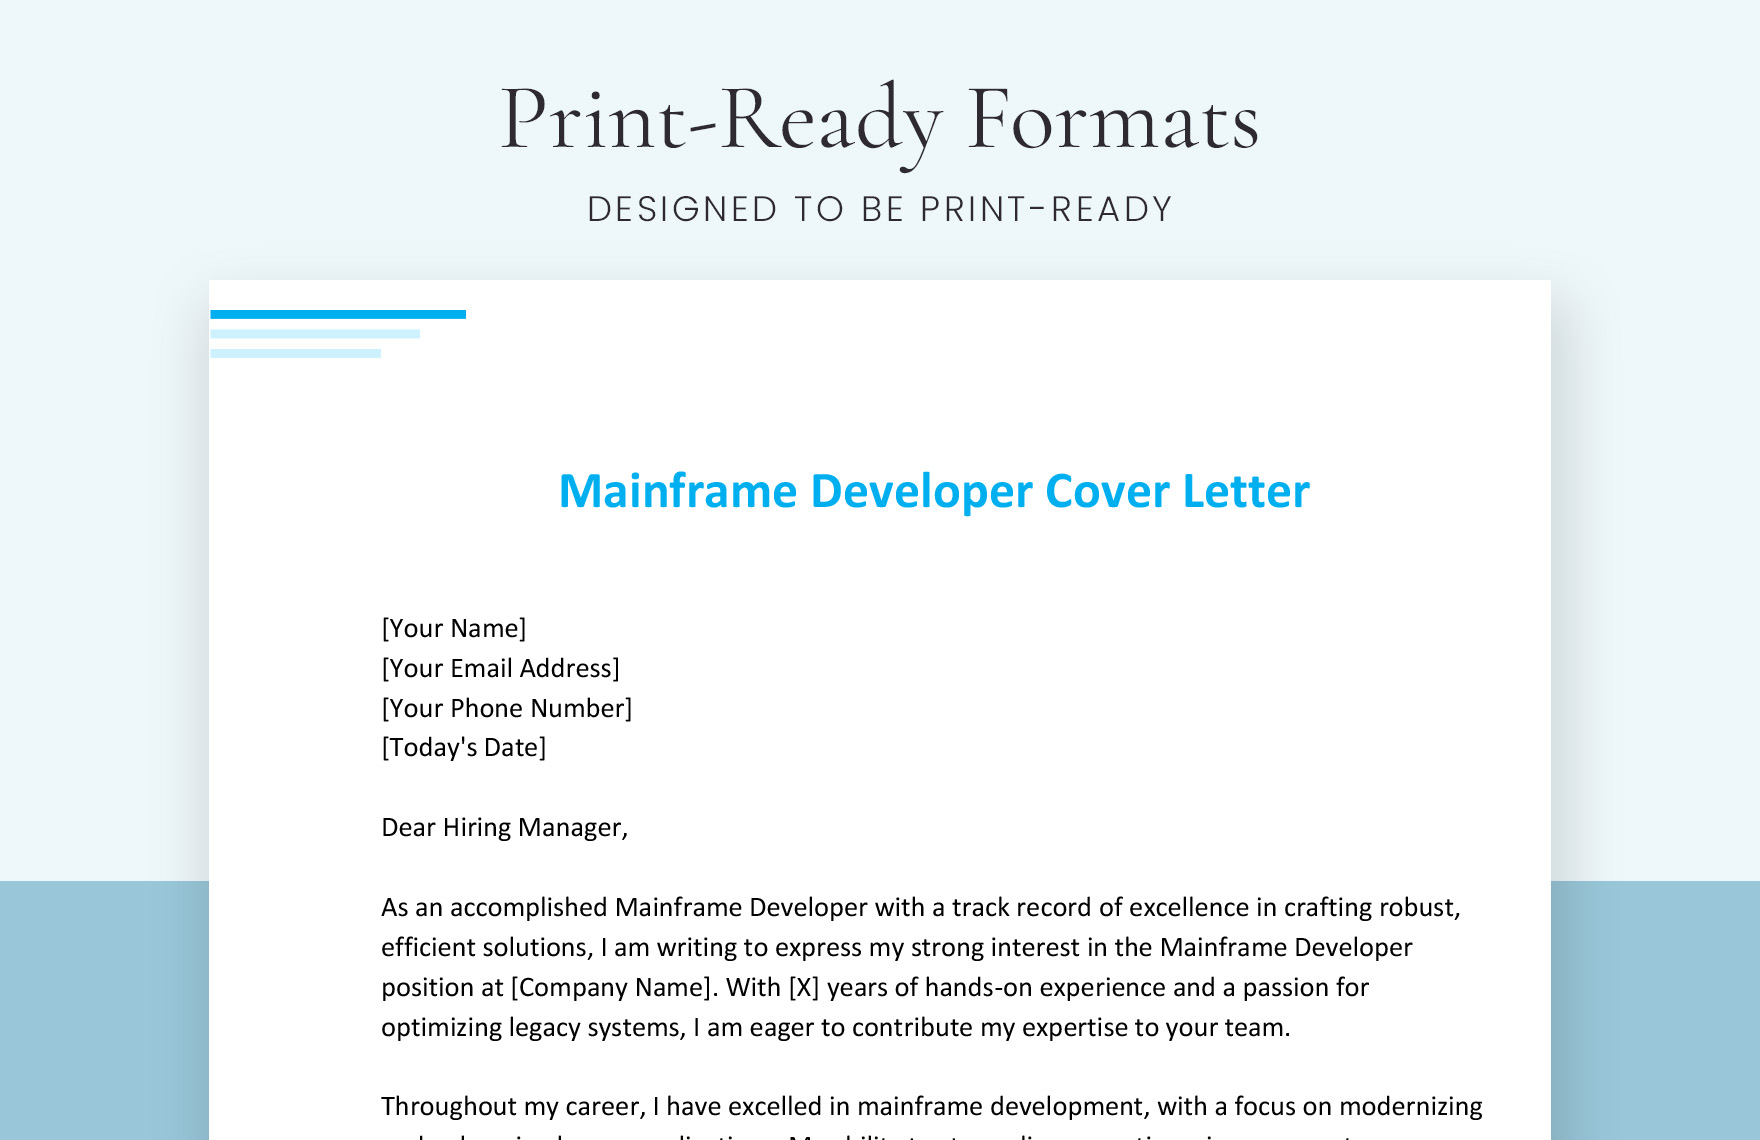 Mainframe Developer Cover Letter